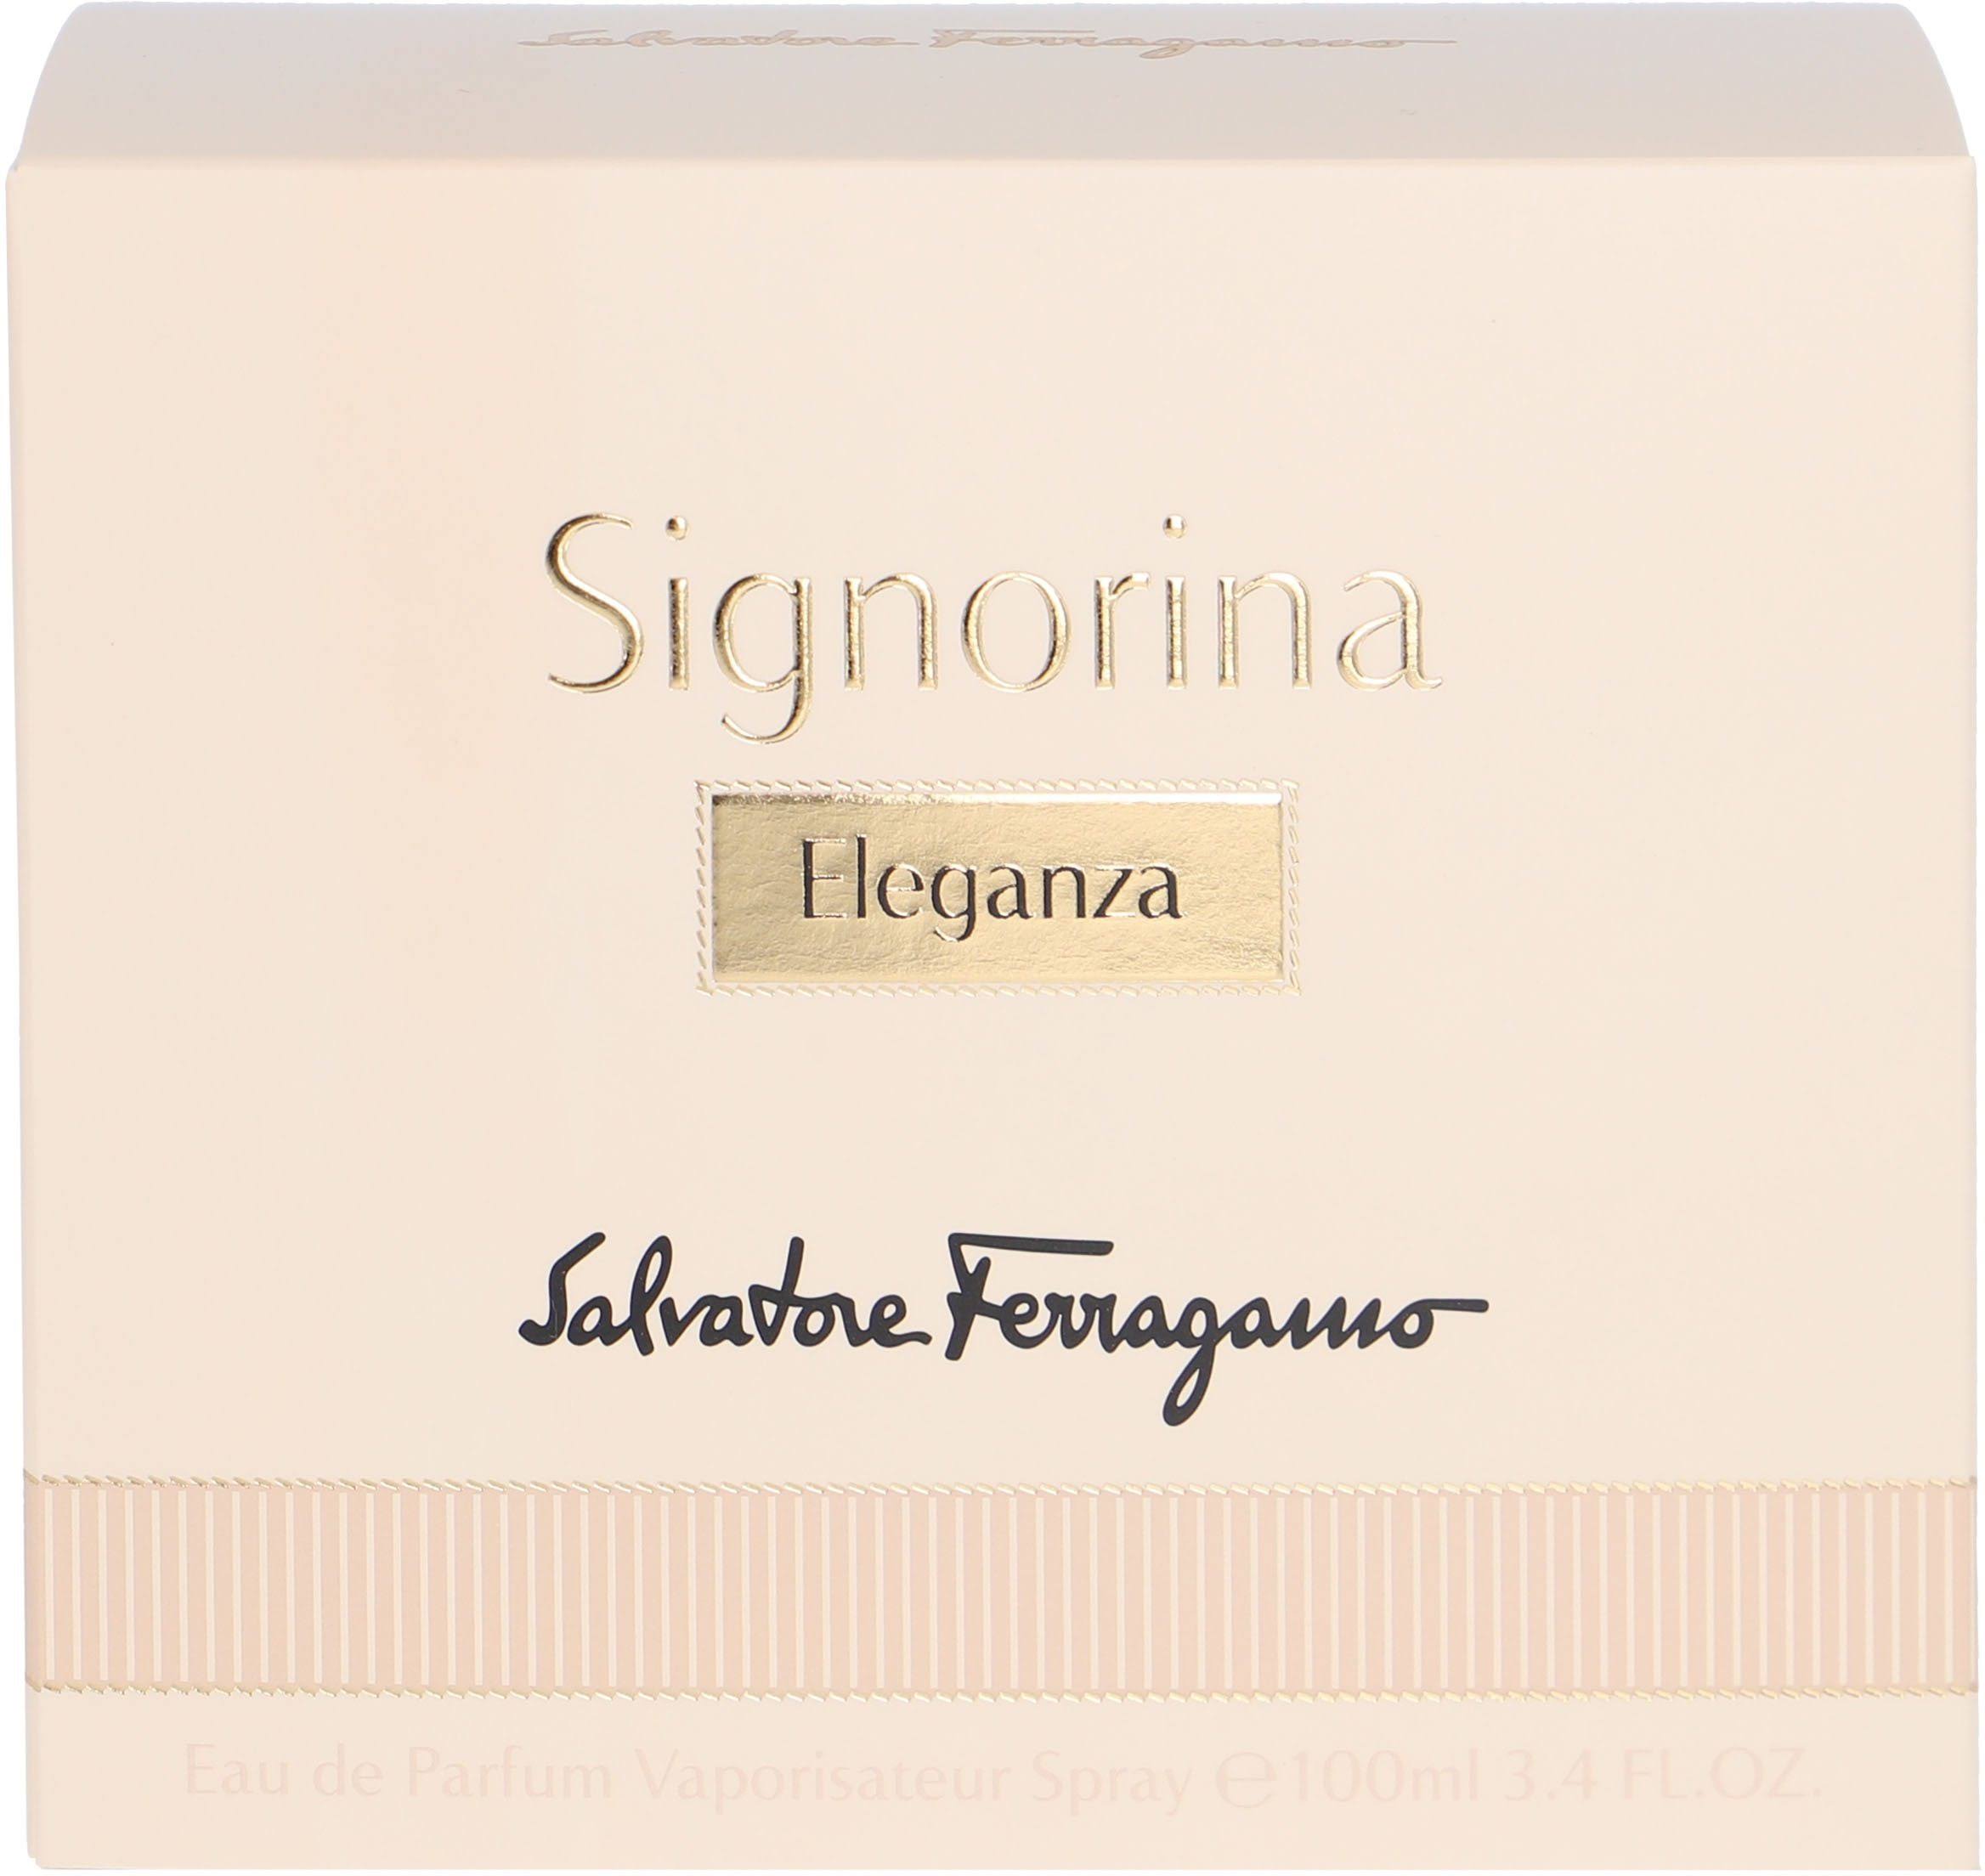 Signorina Eleganza by Salvatore Ferragamo 3.4 oz For Women EDP Spray